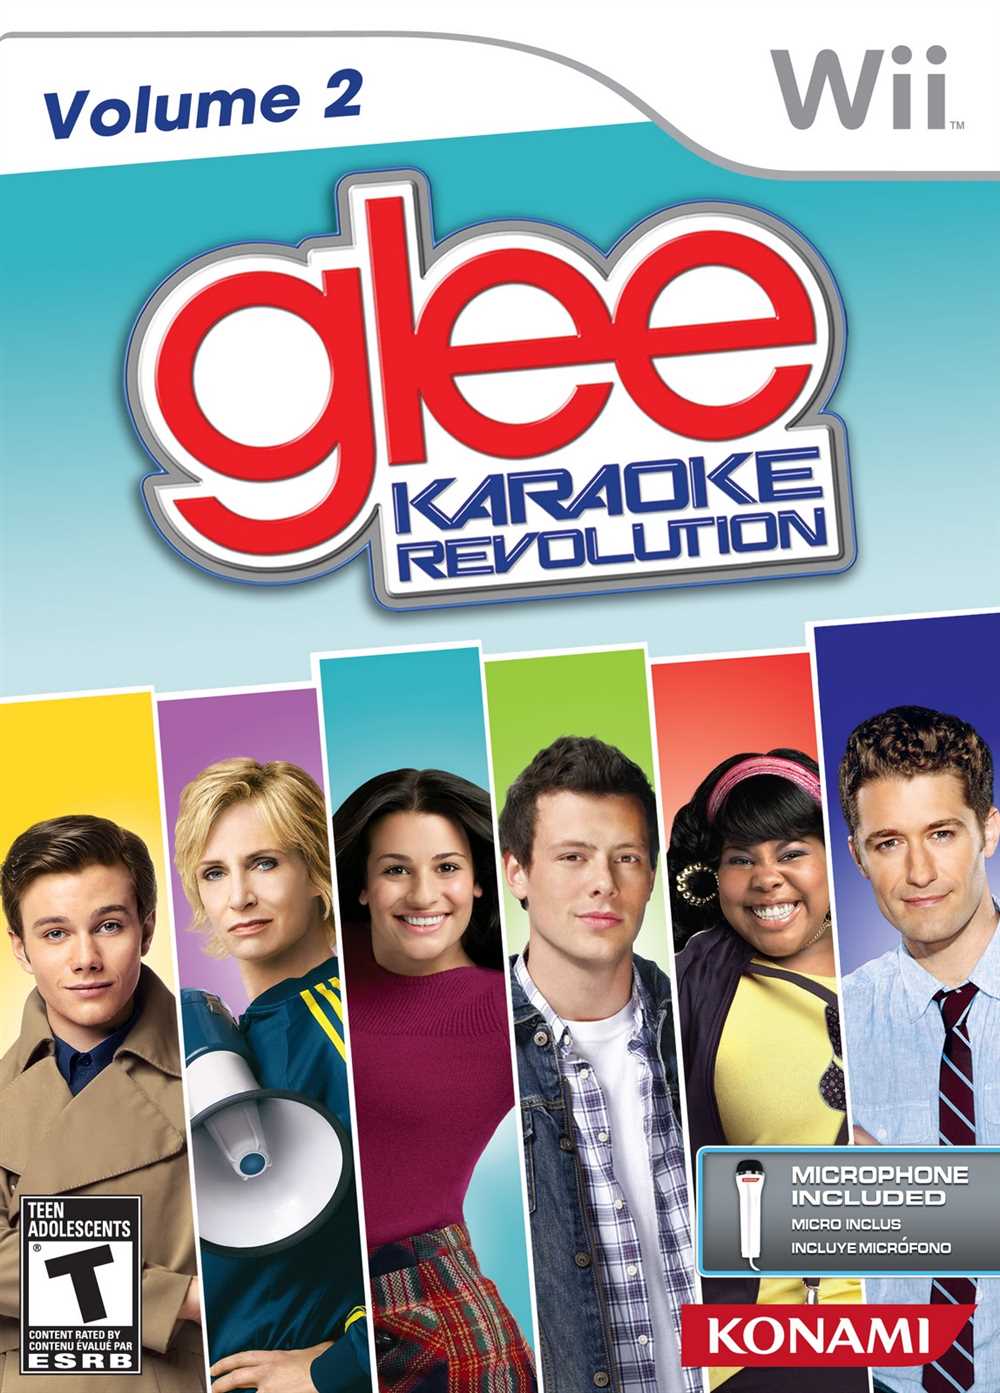 ¡Canta tus canciones favoritas de Glee!